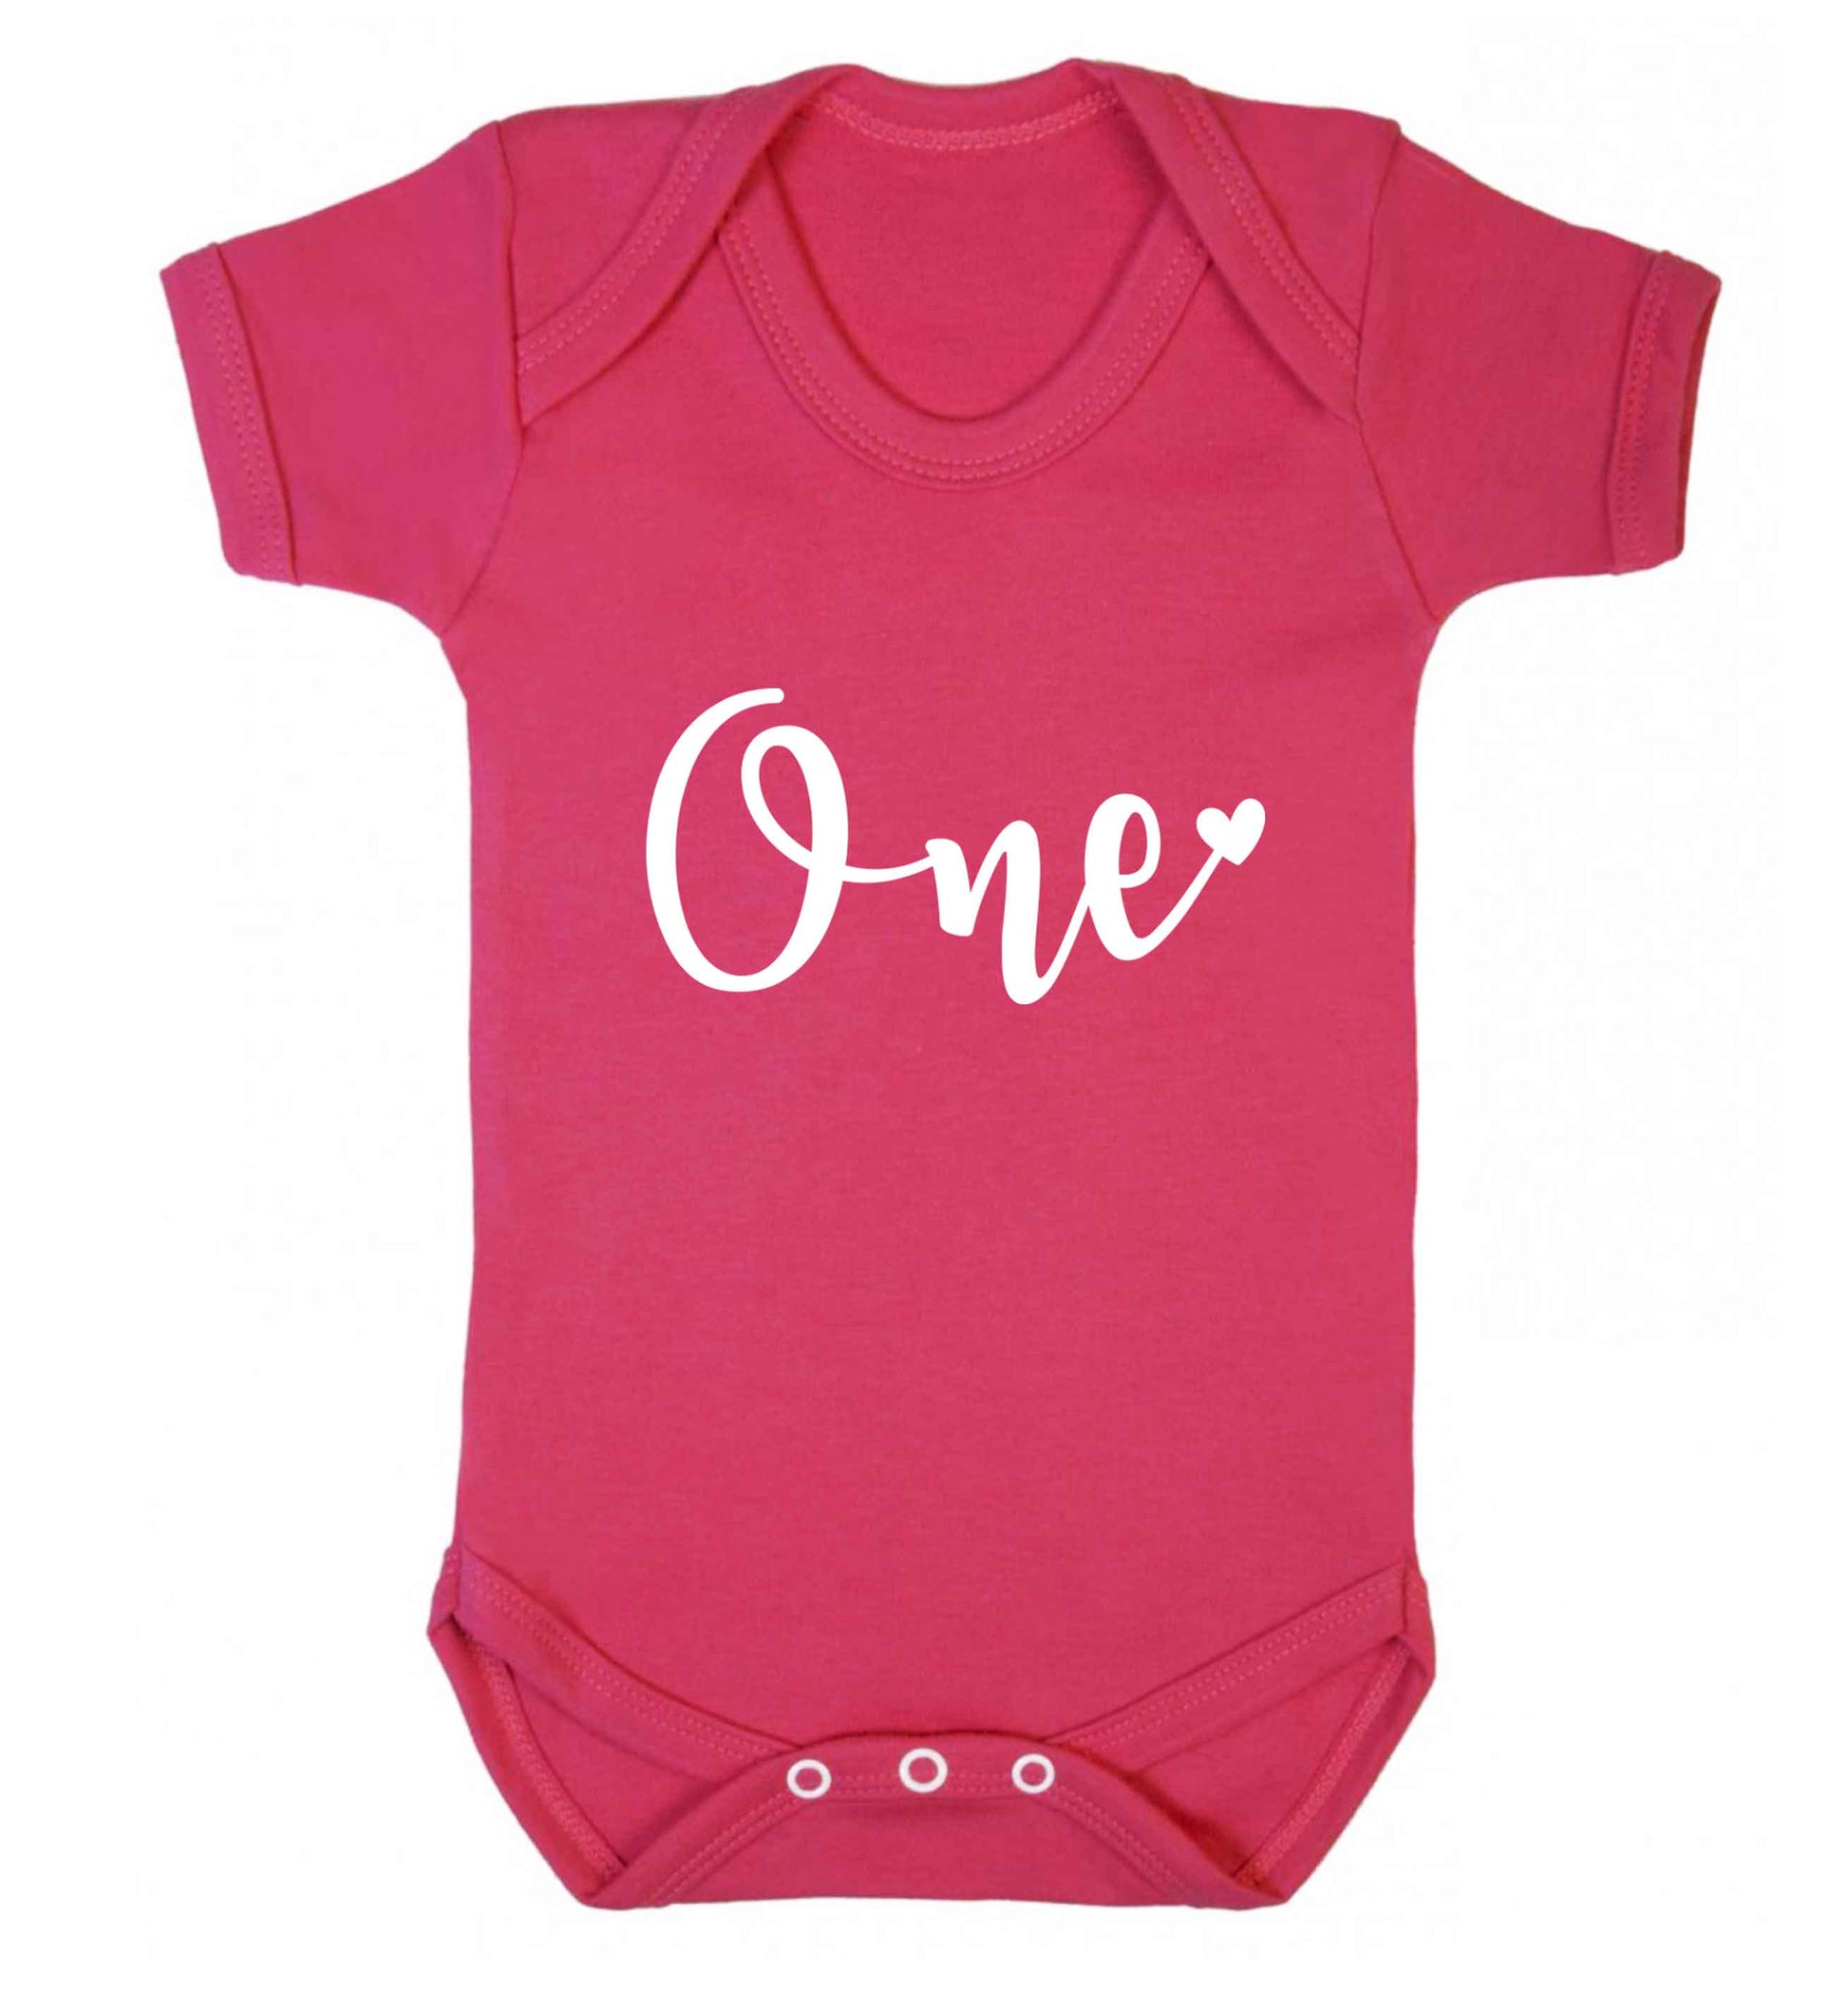 One baby vest dark pink 18-24 months